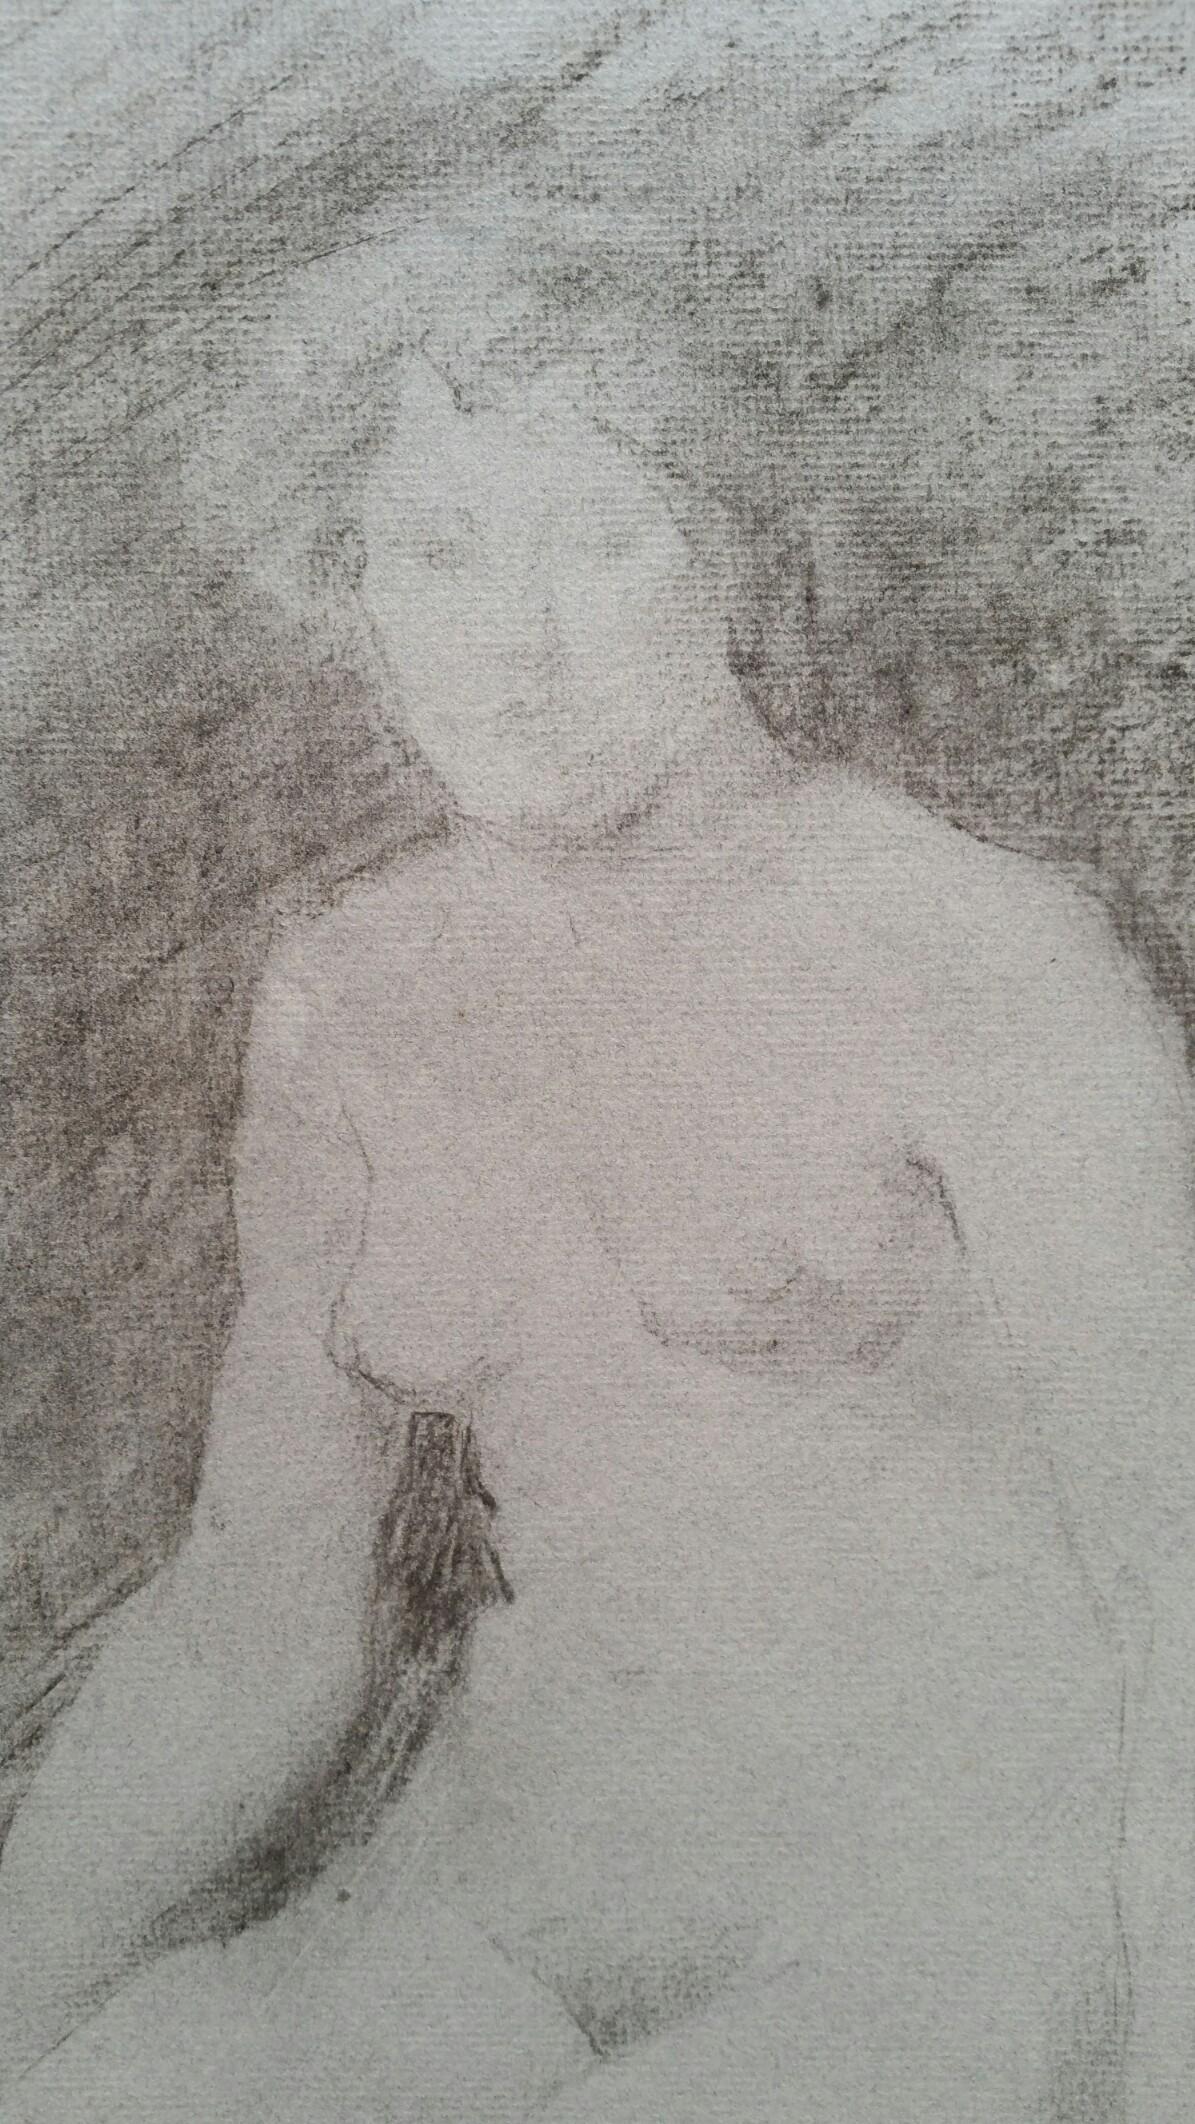 Esquisse au graphite d'un nu féminin assis, de style anglais
par Henry George Moon (britannique, 1857-1905)
sur papier d'artiste gris clair, non encadré
mesures : feuille 18.75 x 10.25 pouces (largeur mesurée au point le plus étroit de la